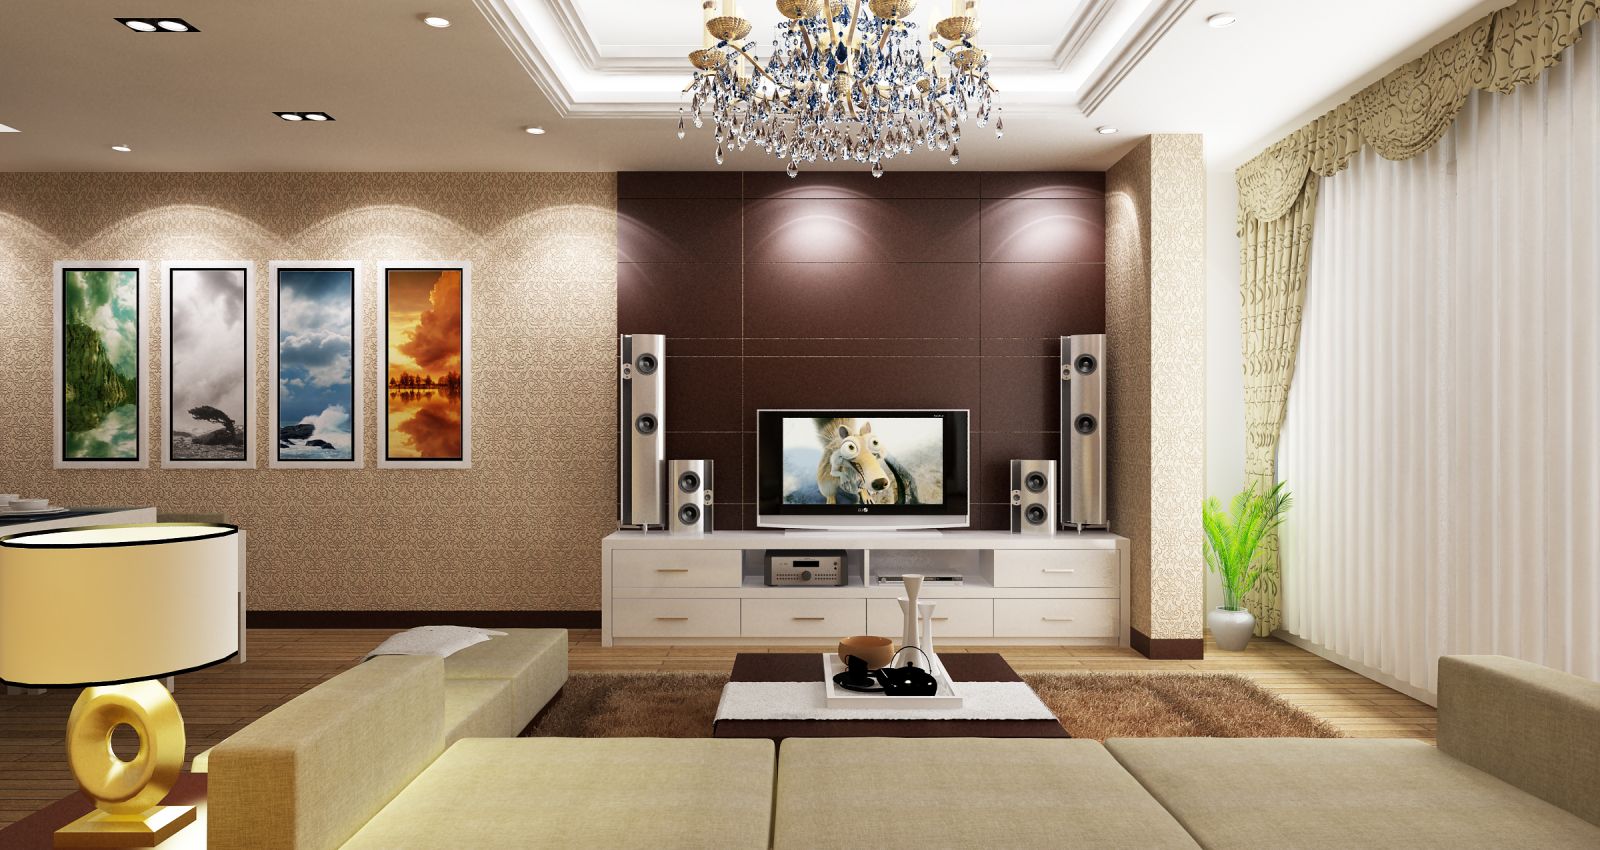 Thiết kế nội thất chung cư ngày càng được chú trọng, tạo ra những không gian sống đẹp và thoáng mát trên diện tích hạn chế. Hãy cùng xem các hình ảnh mới nhất về thiết kế nội thất chung cư để lấy ý tưởng và trang trí cho căn hộ của bạn!